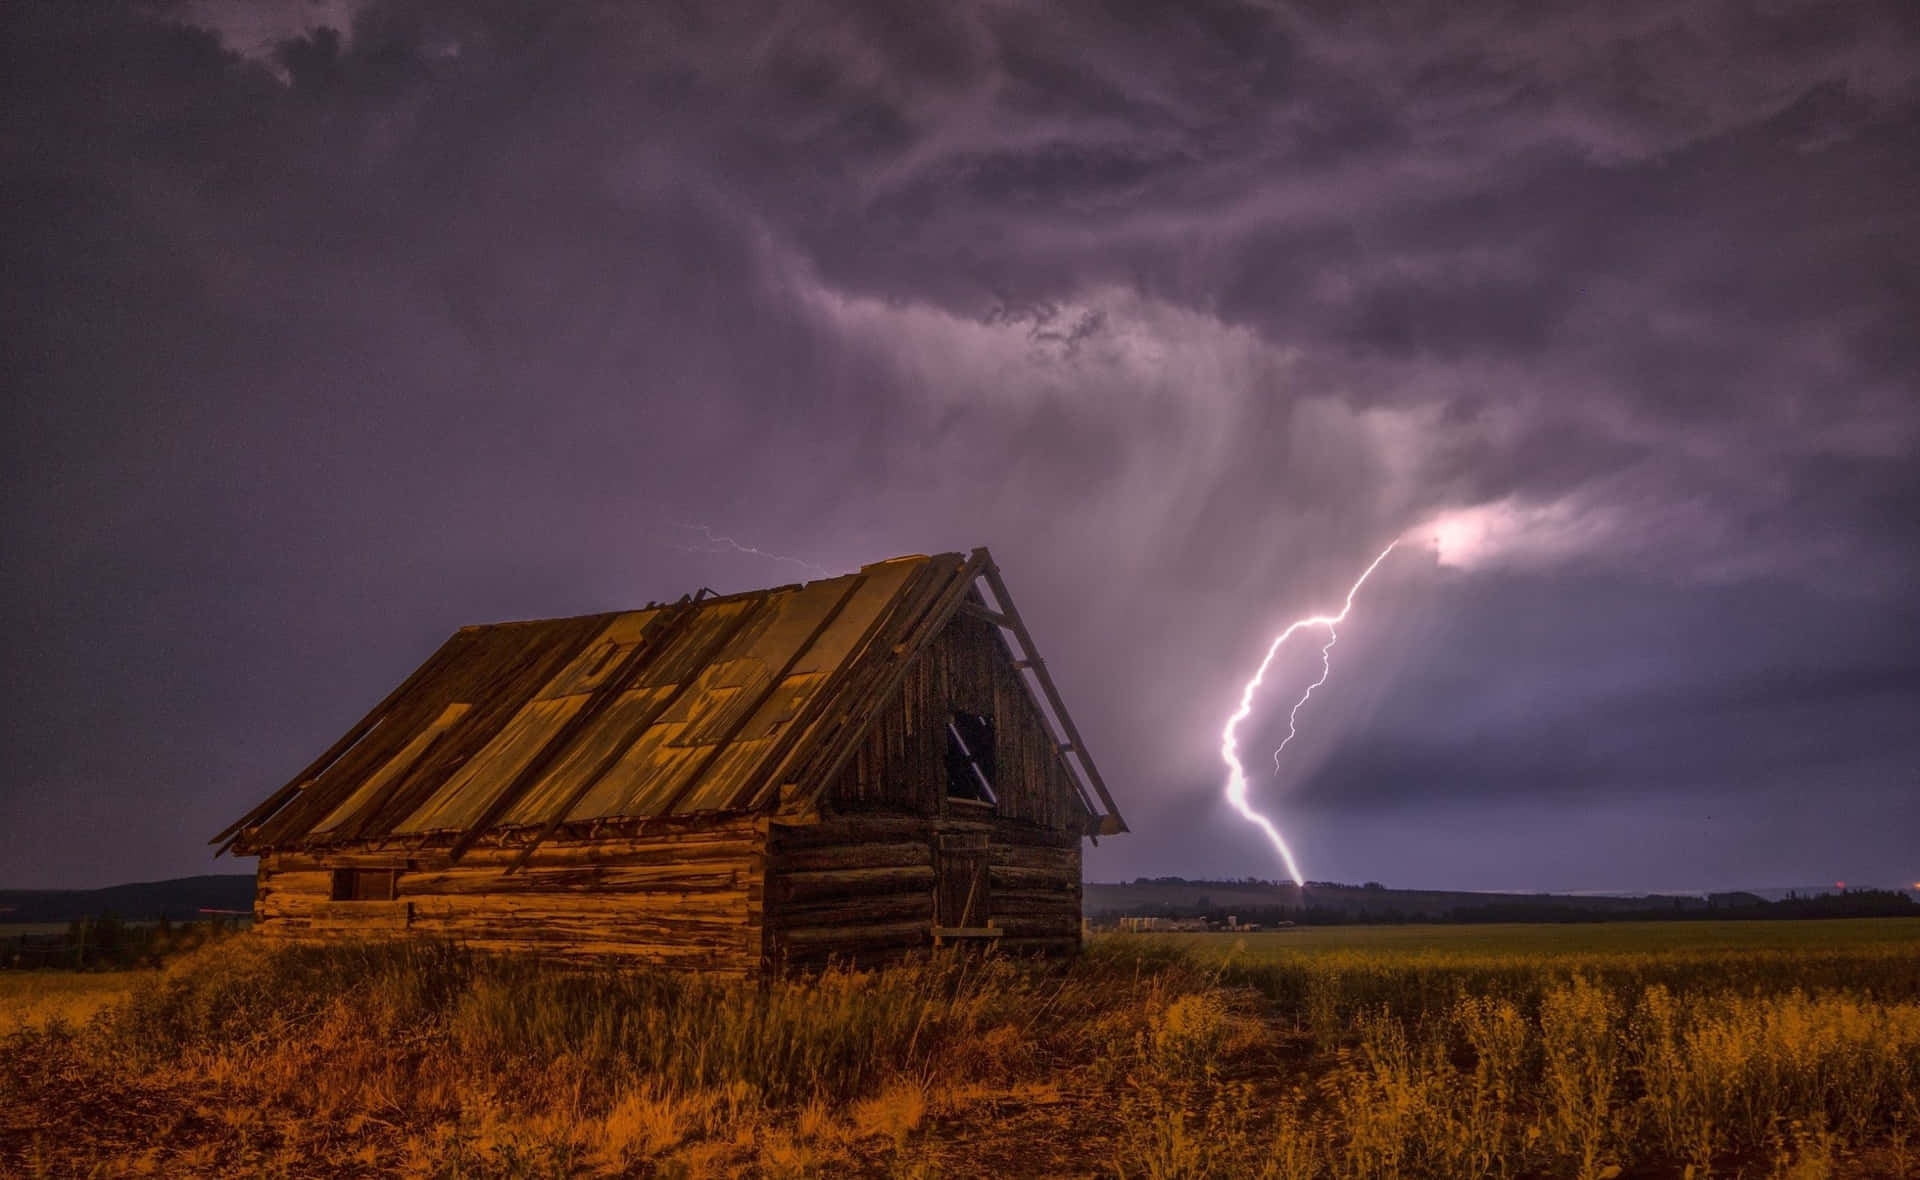 Thunderstorm Background Image